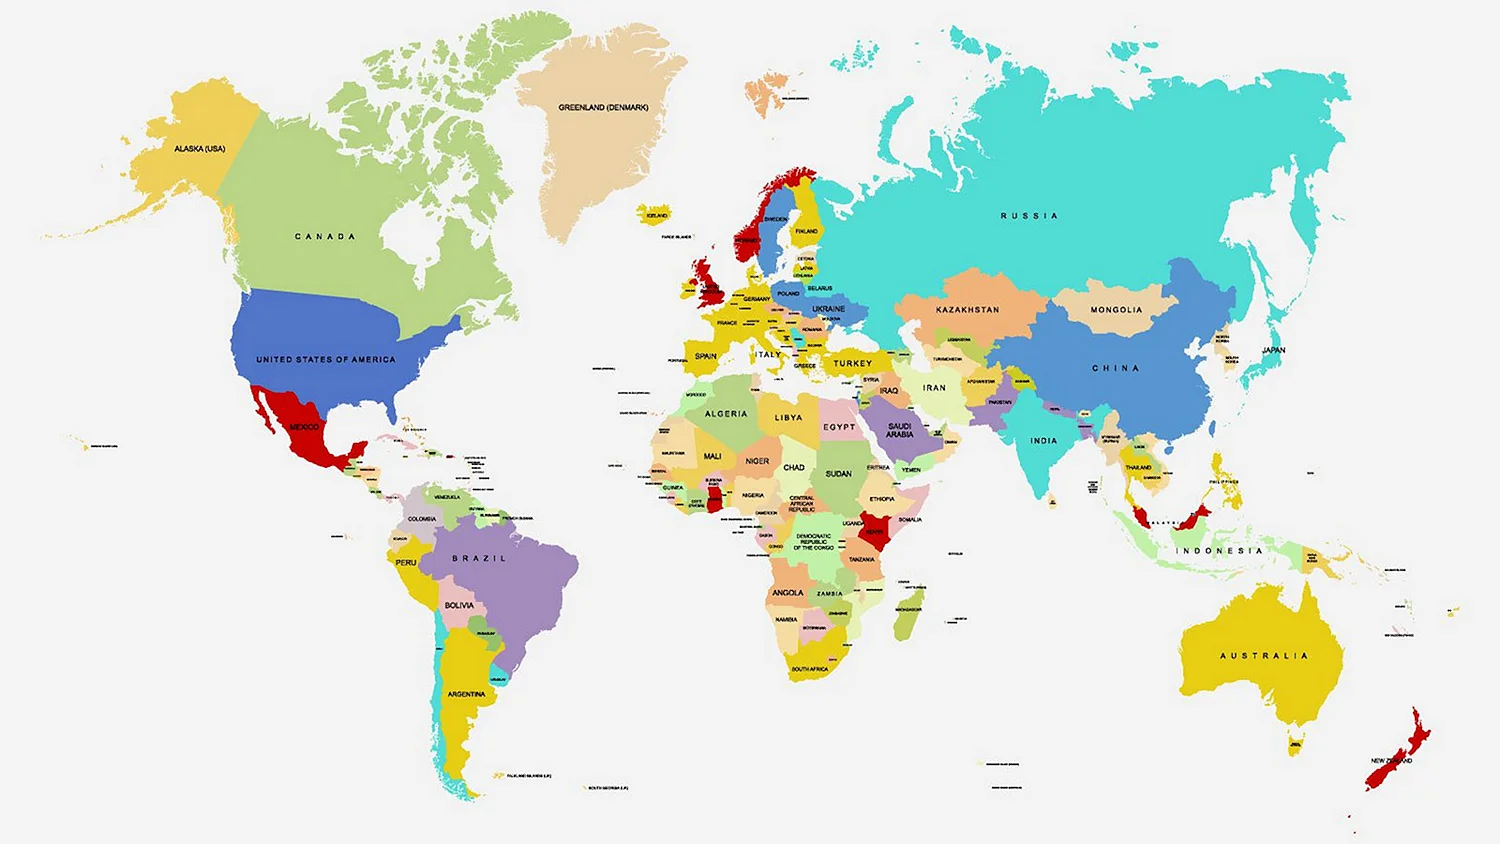 Карта мира политическая без названий государств